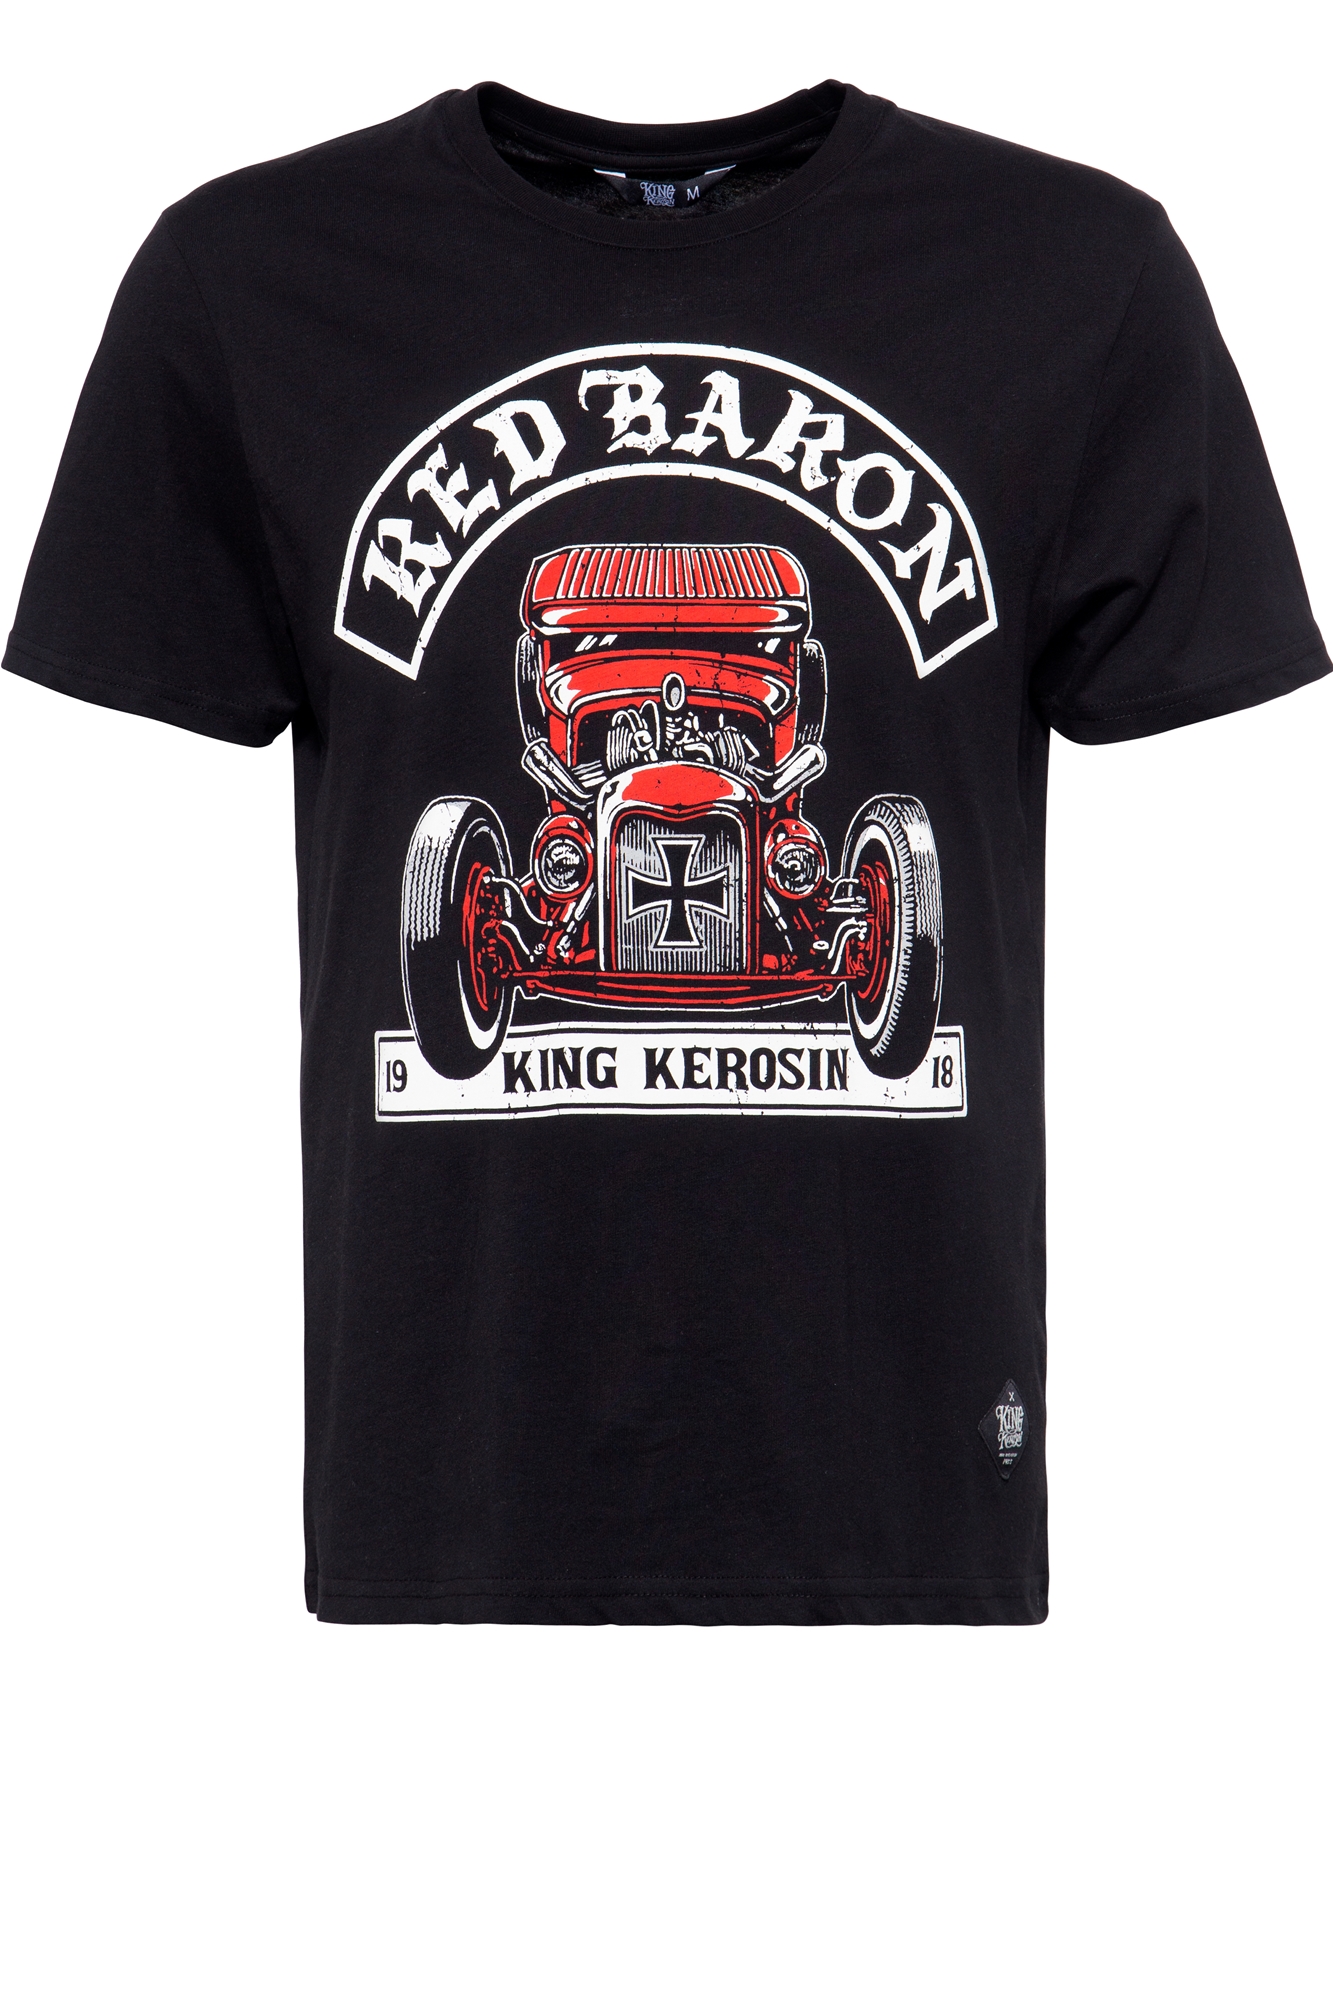 King Kerosin T-Shirt - Red Baron M